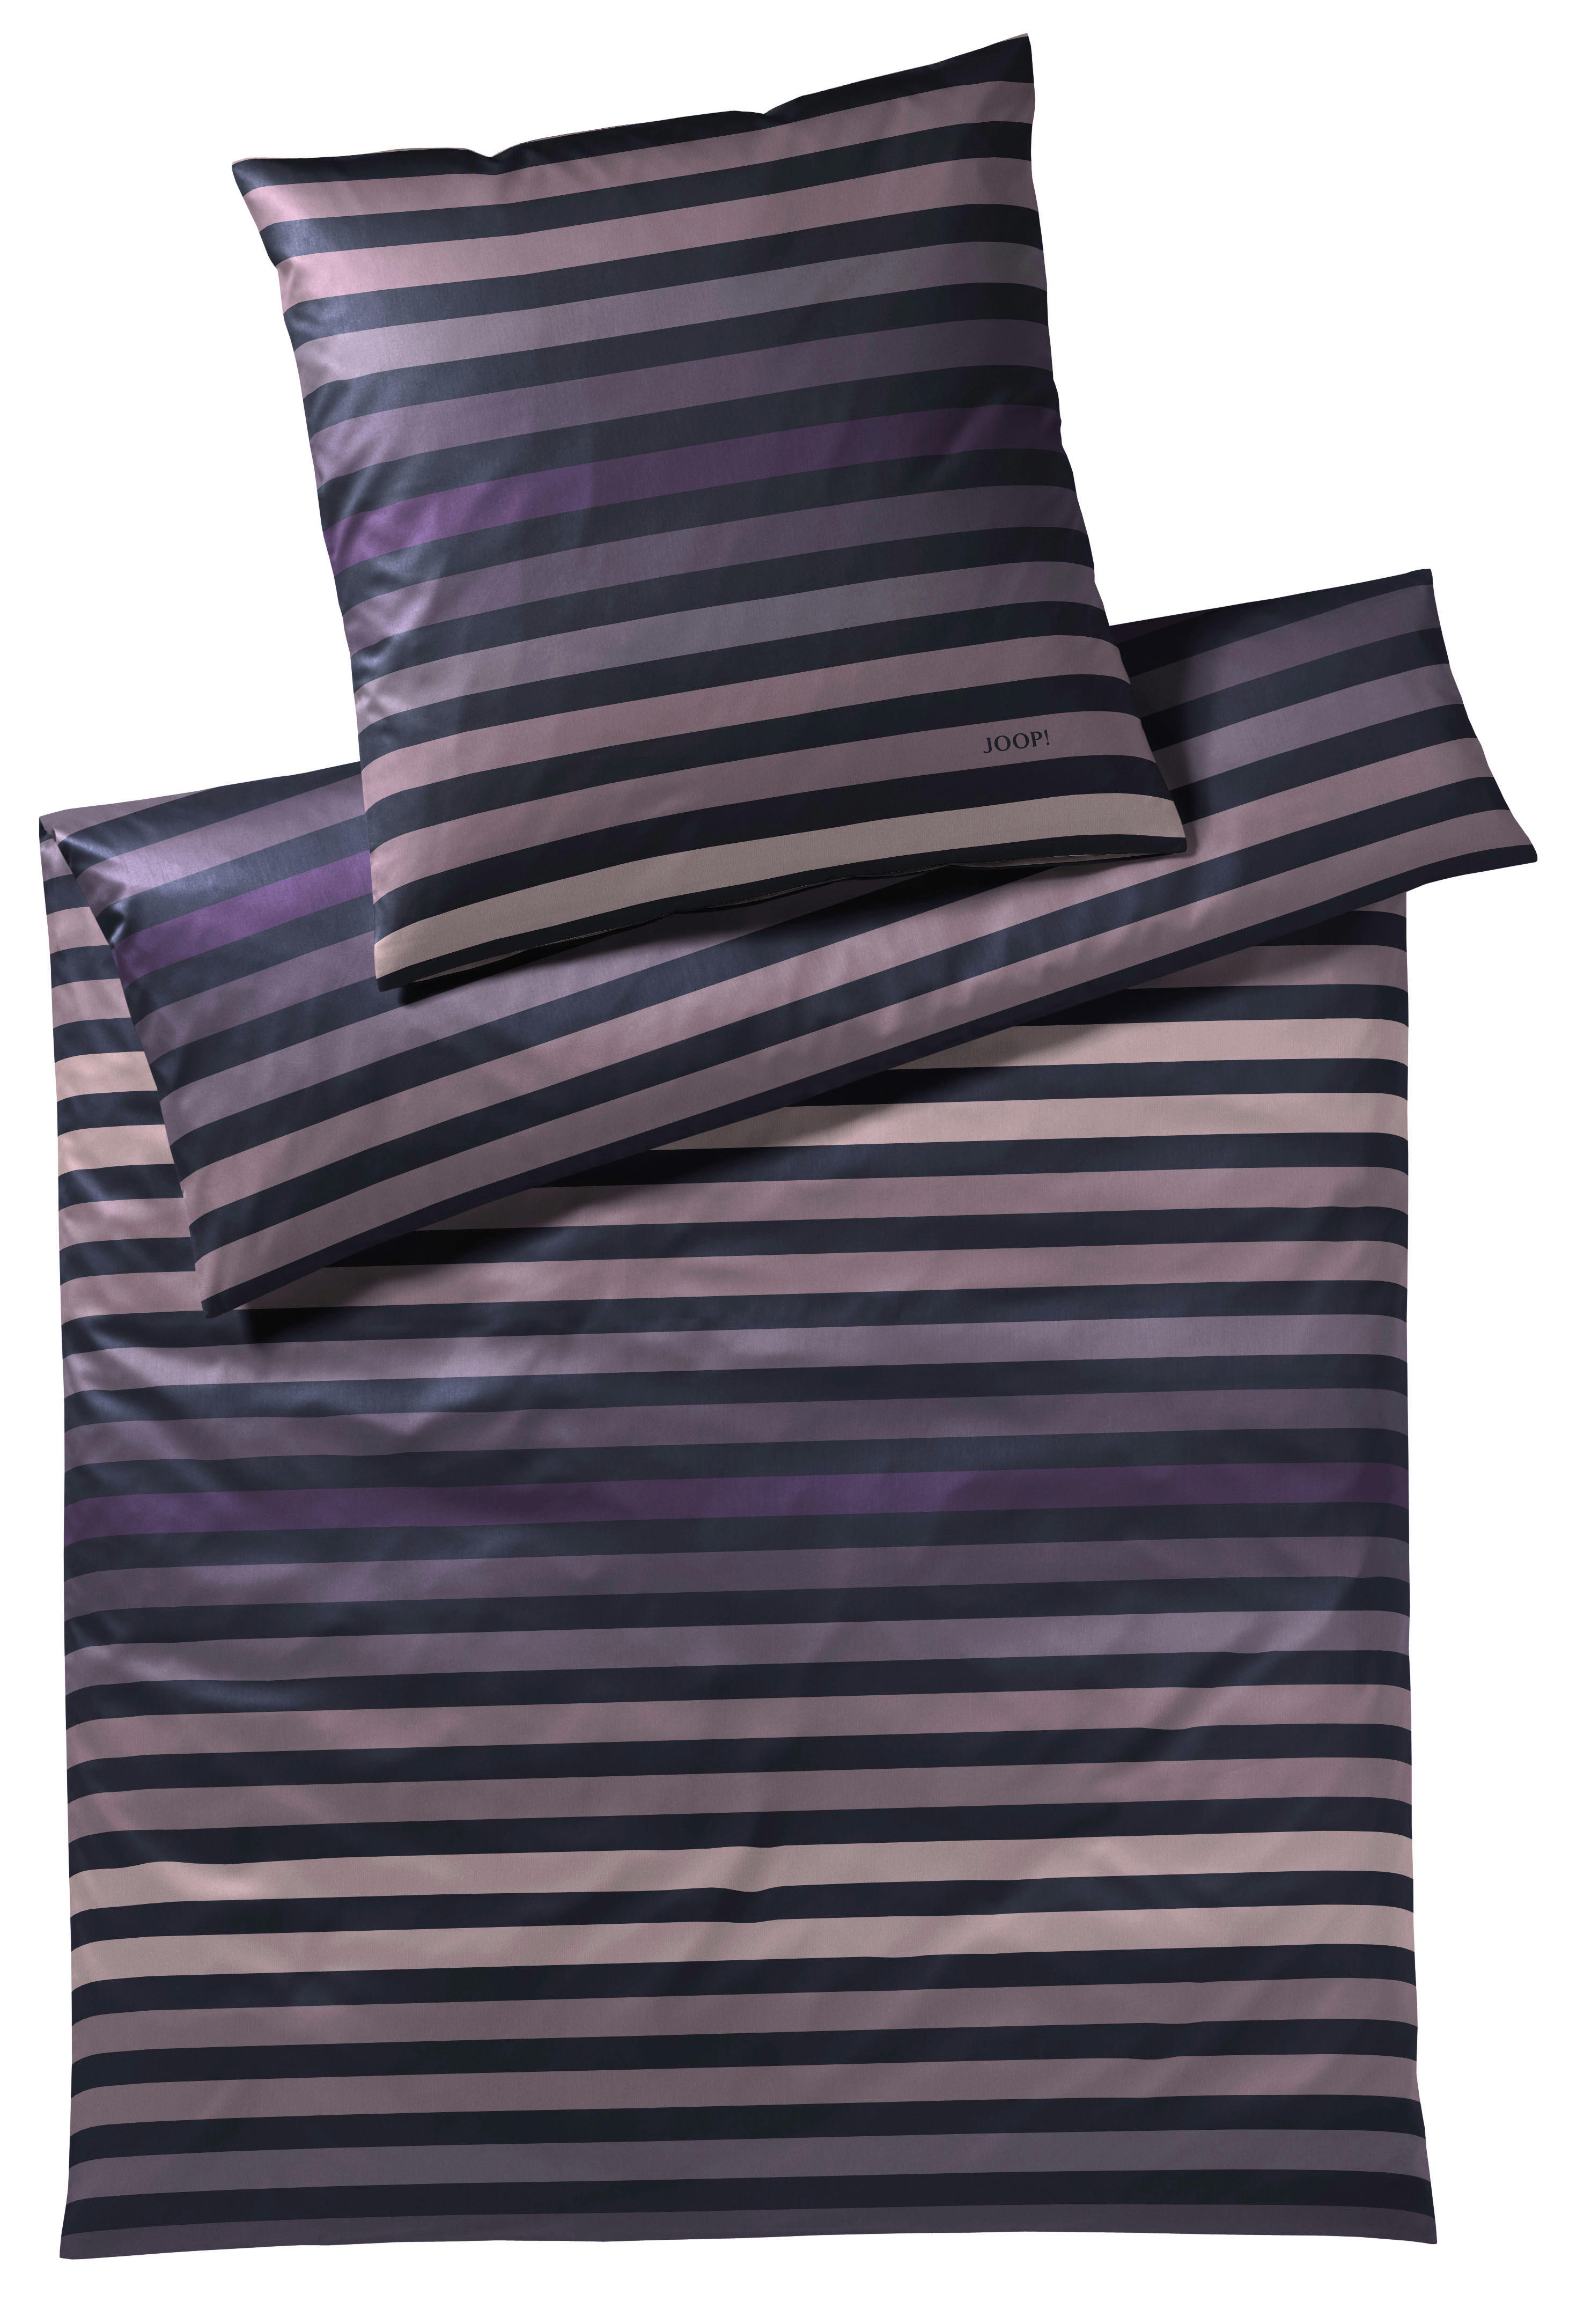 BETTWÄSCHE Tone Makosatin  - Violett, Design, Textil (135/200cm) - Joop!